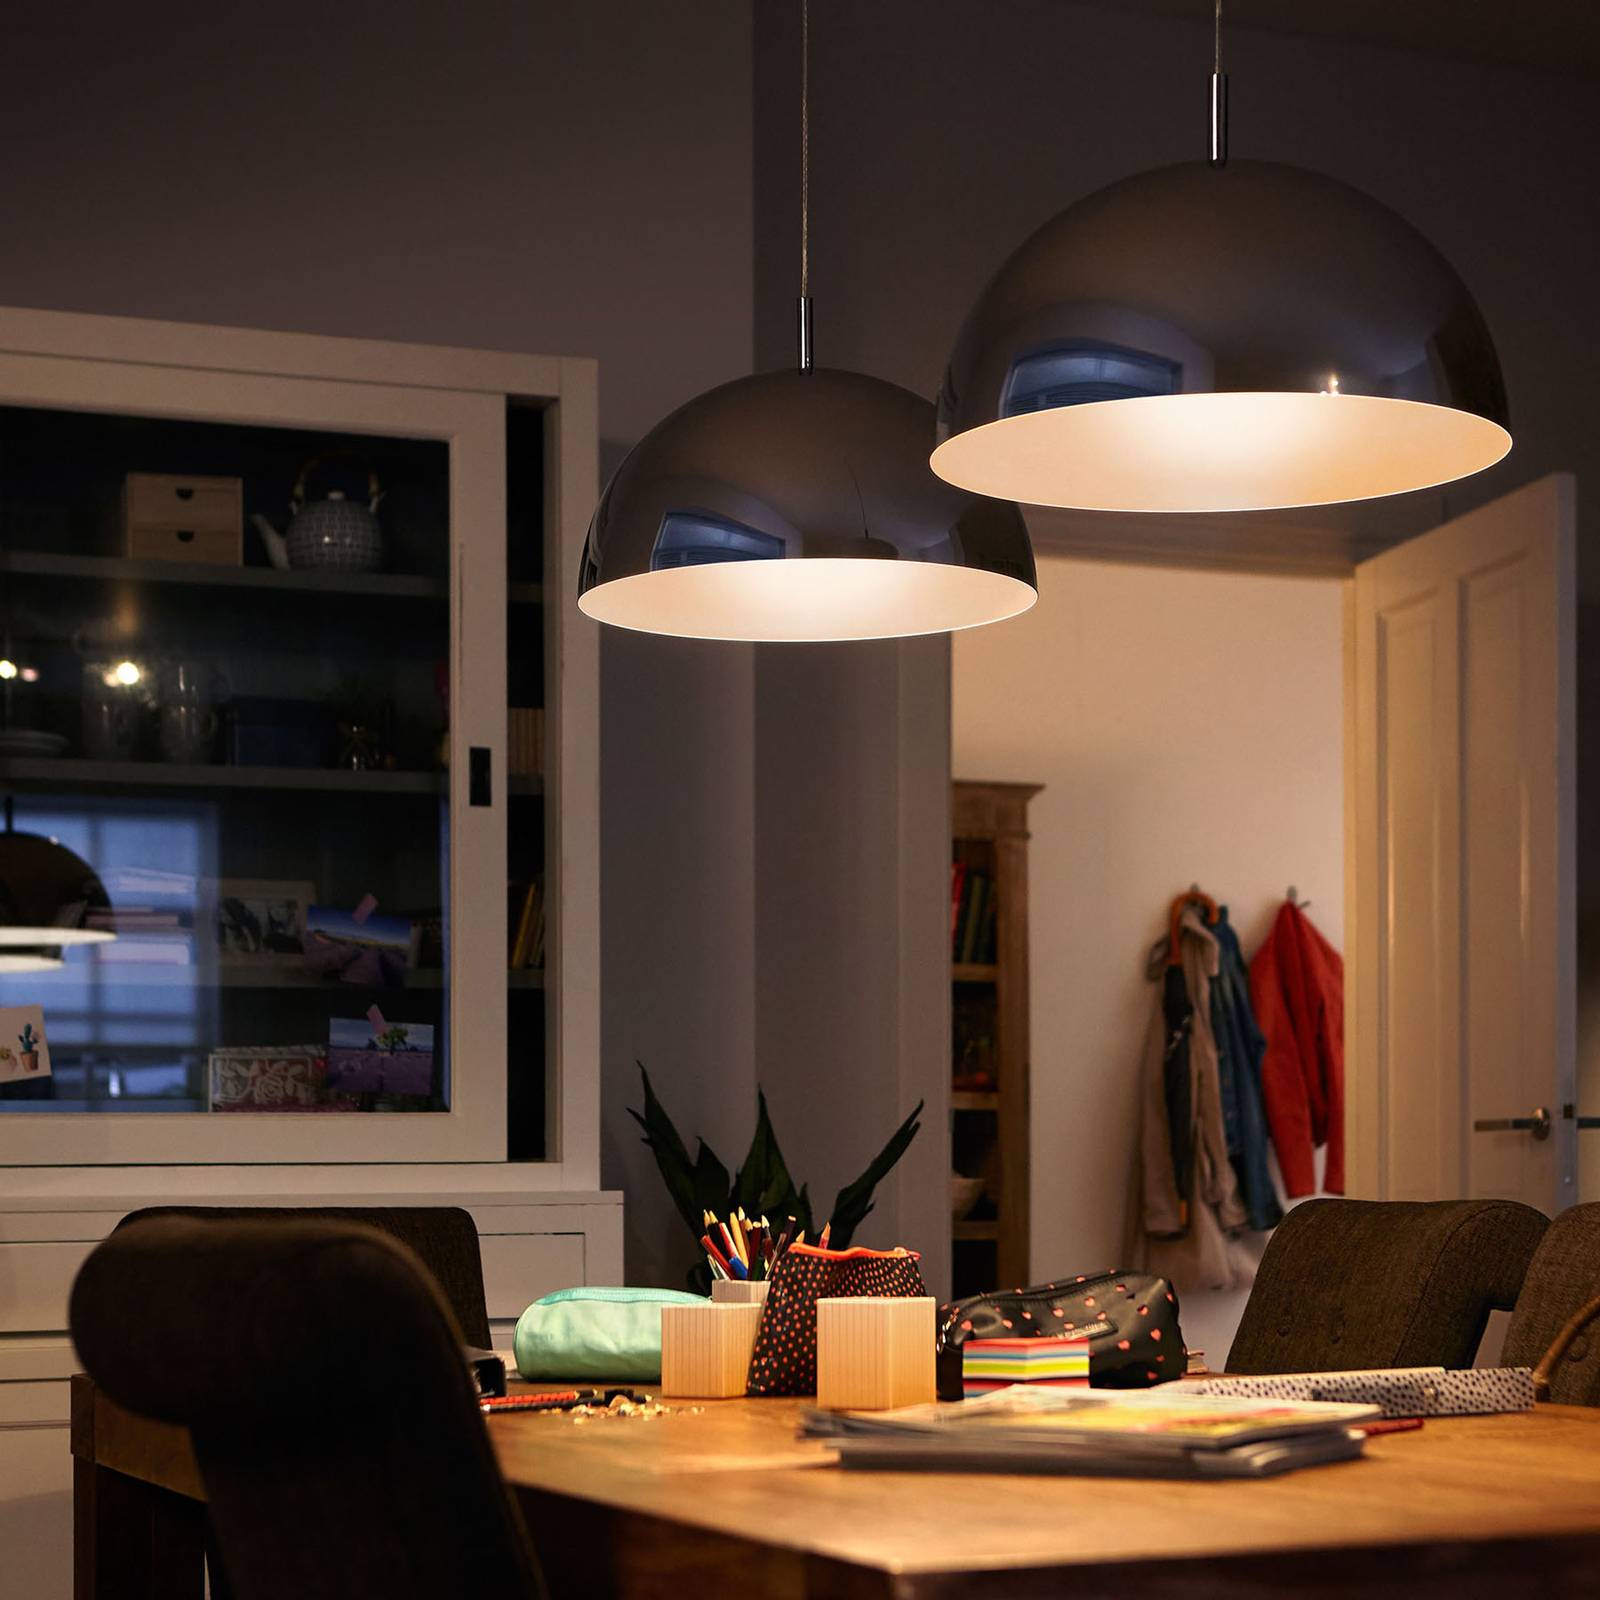 Philips LED-Kerzenlampe E14 B35 4,3W matt 3er-Pack günstig online kaufen